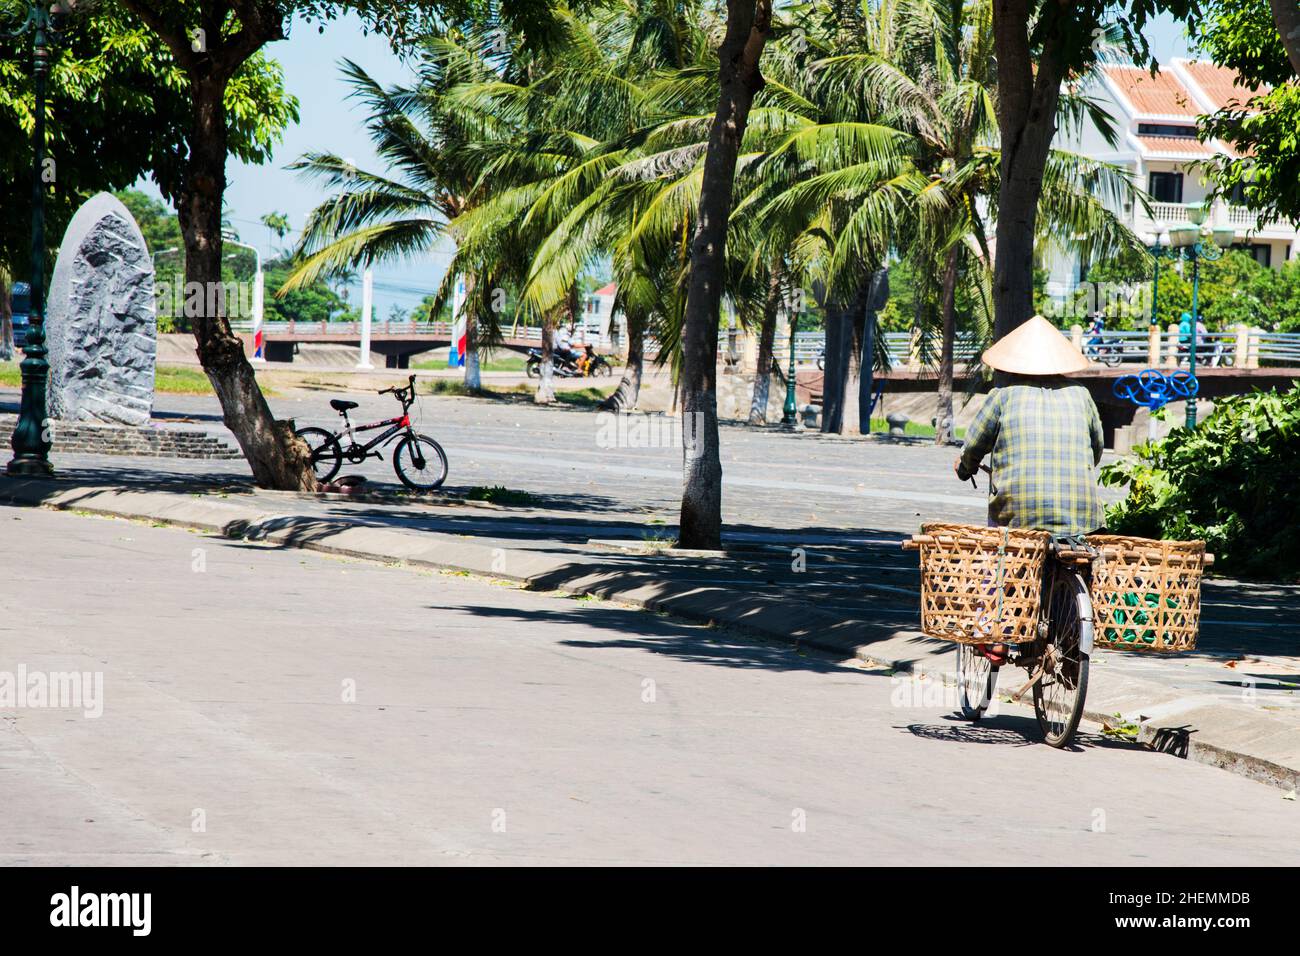 Persona vista dalla schiena muovendosi su una bicicletta con un cappello conico e un palo da trasporto con verdure. Strada vuota. Hue, Vietnam, Asia Foto Stock